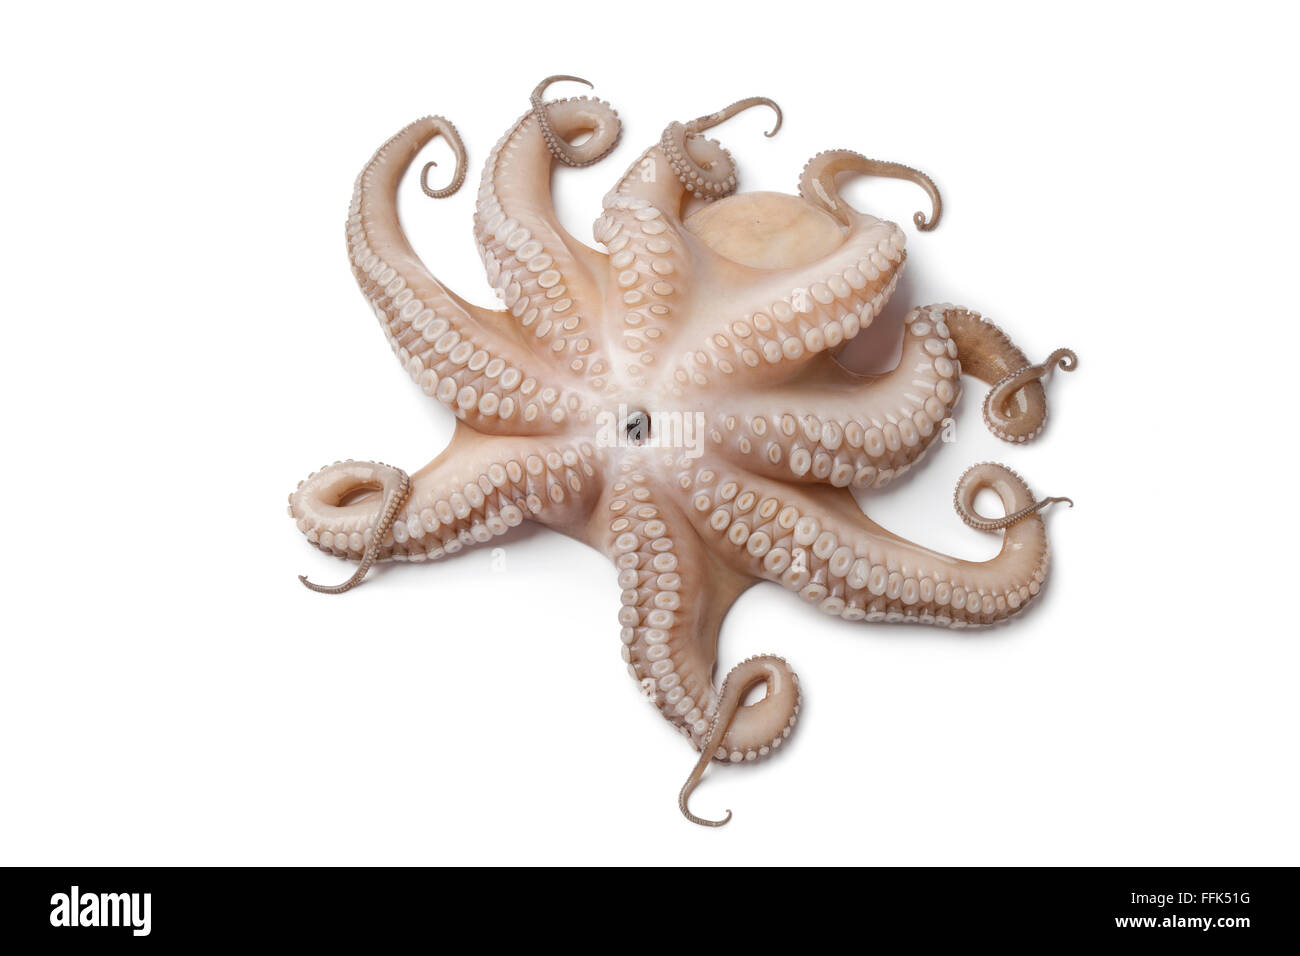 Ensemble de la matière première unique octopus à l'envers isolé sur fond blanc Banque D'Images